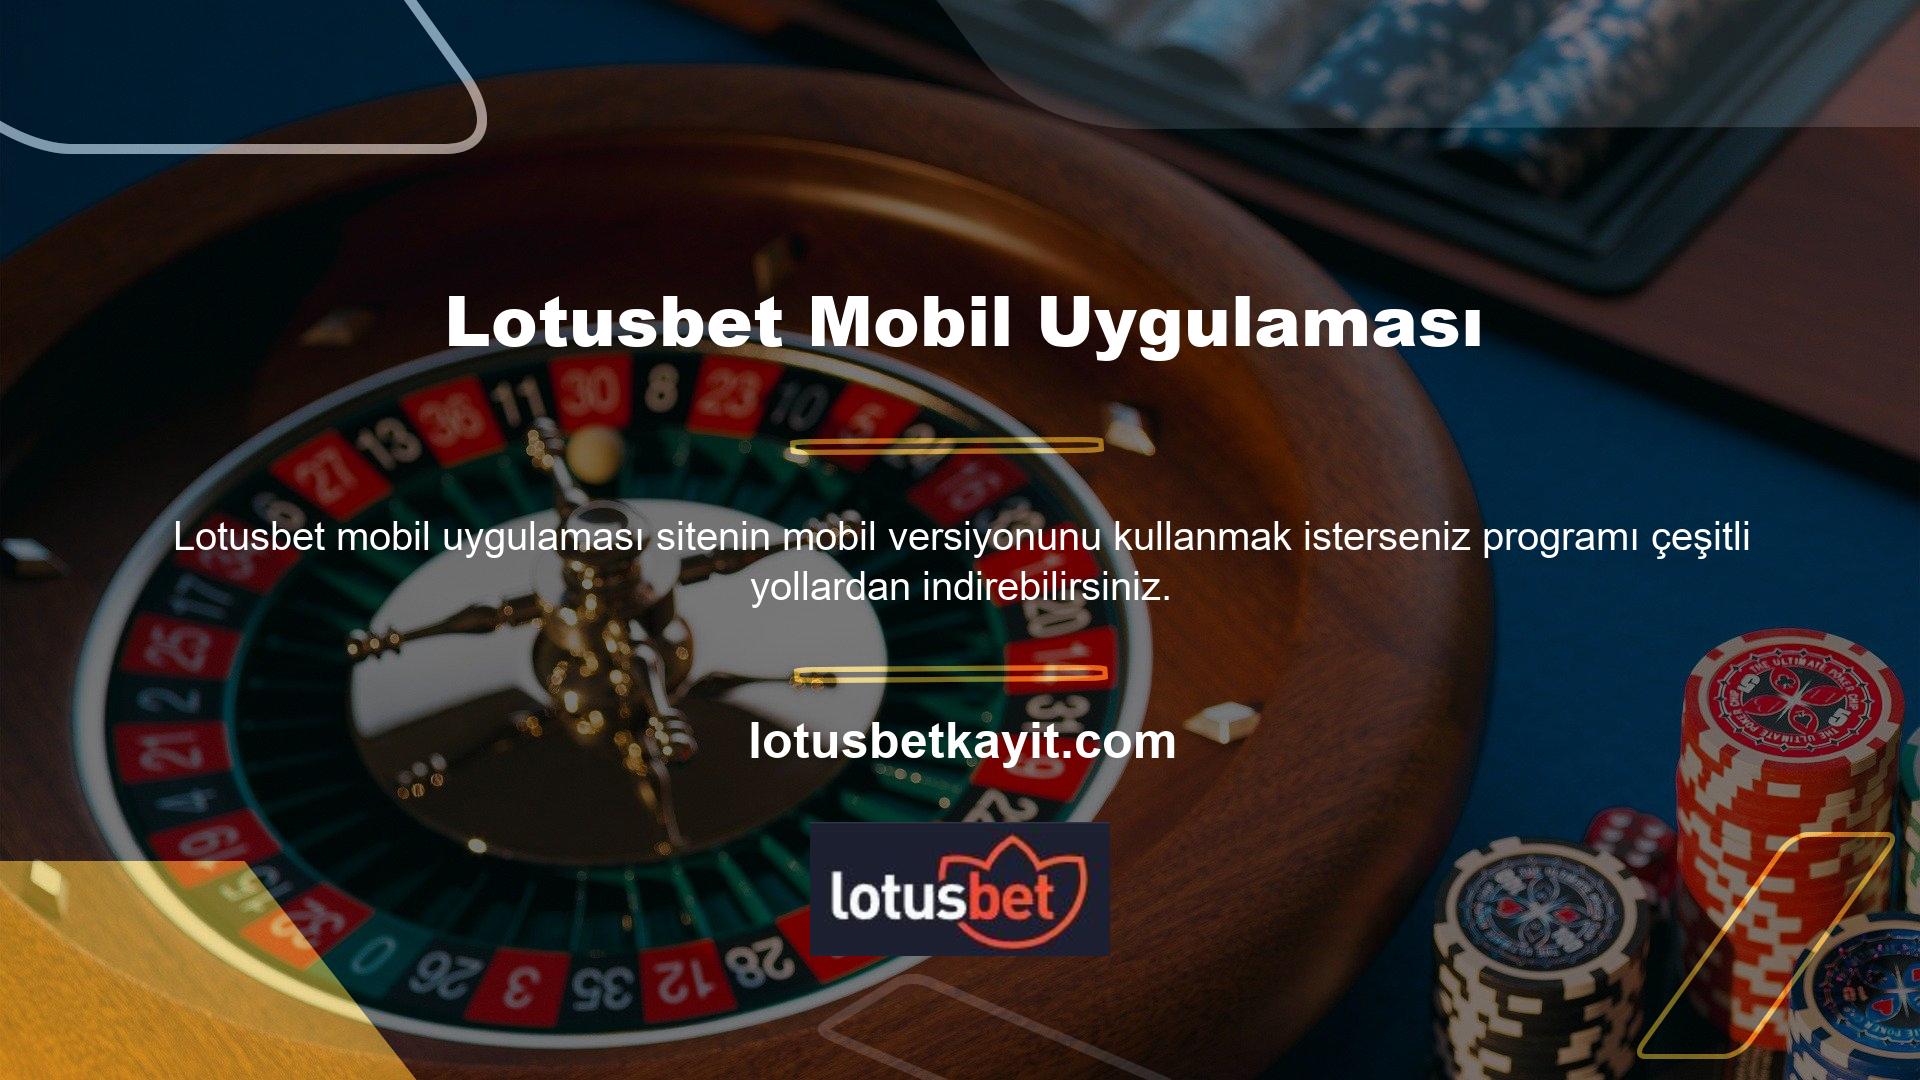 Yeni Lotusbet giriş adresiniz ile web sitesinde ana Lotusbet mobil uygulamasını doğrudan cep telefonunuzdan indirebileceğiniz bir sayfa açılacaktır